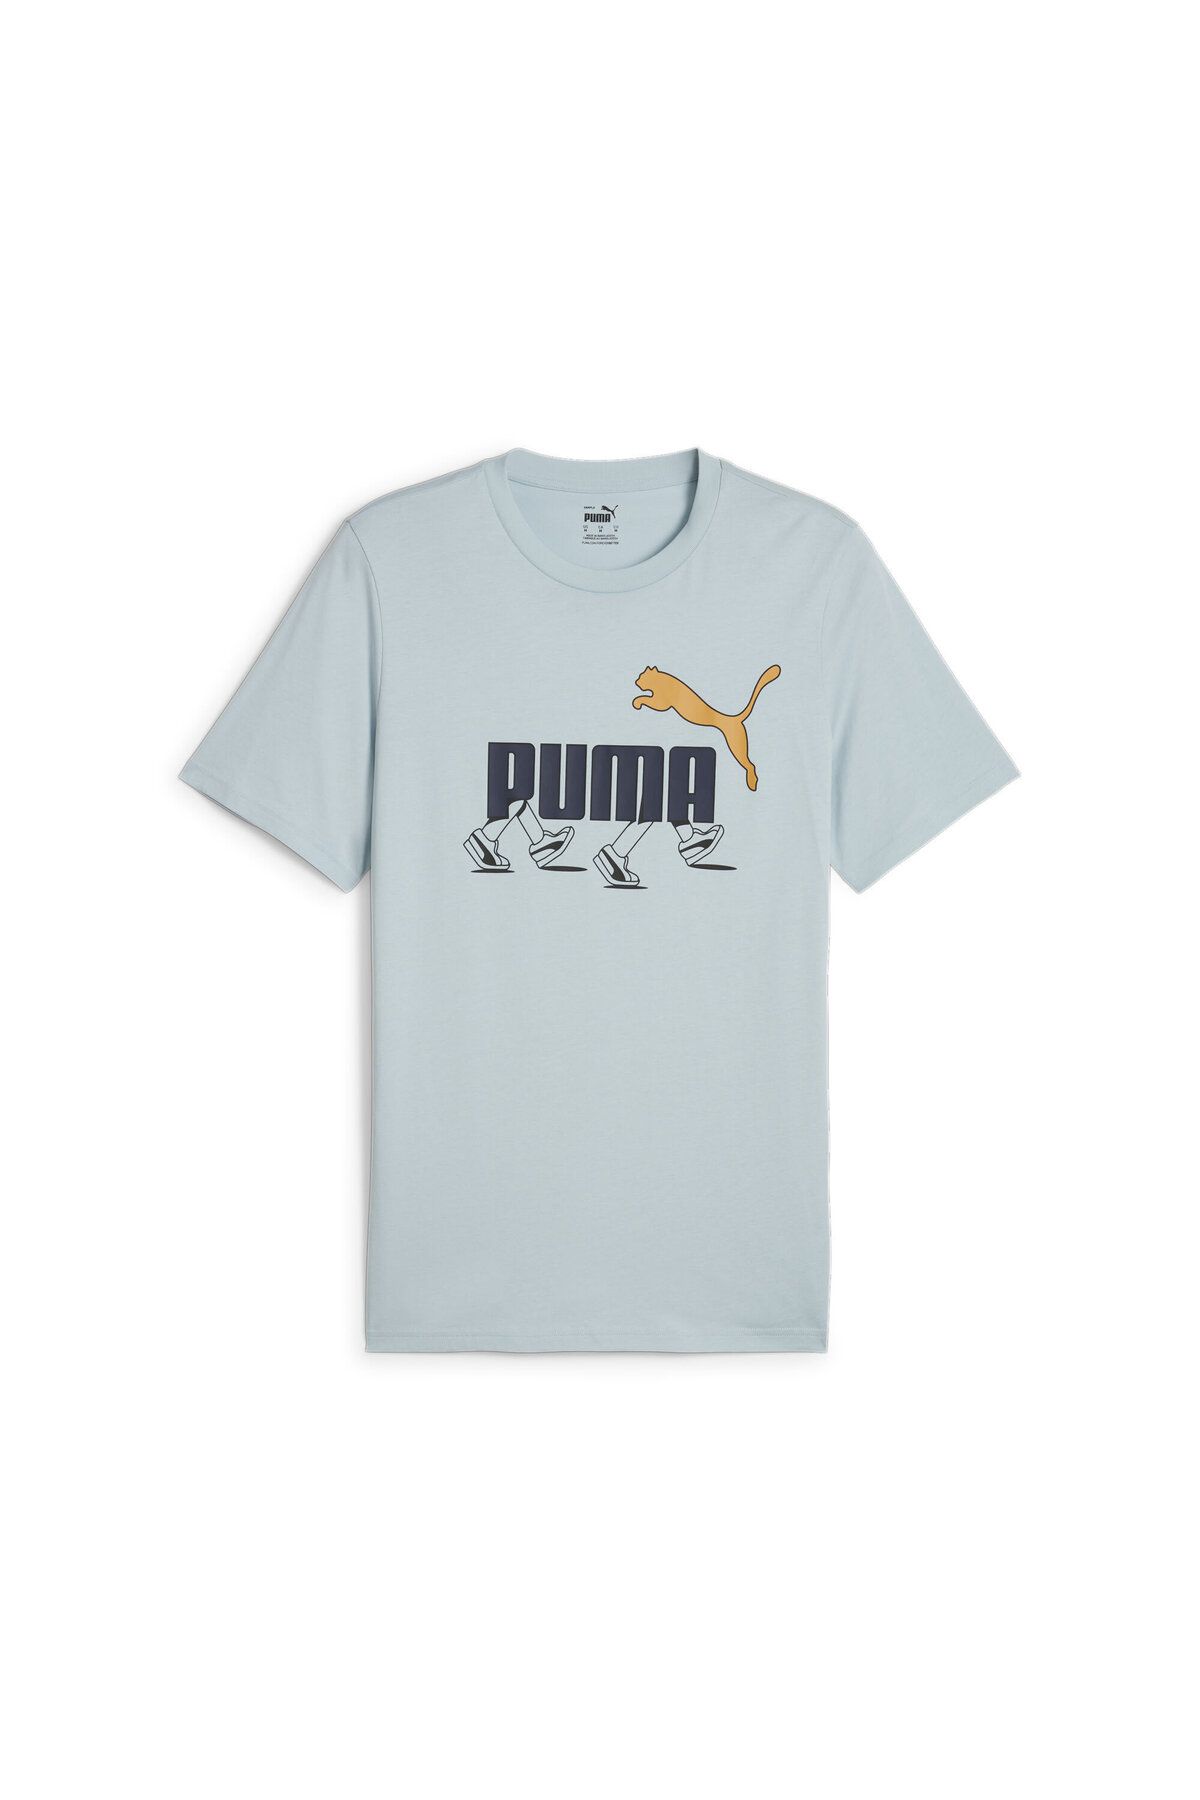 Puma GRAPHICS Sneaker Erkek T-shirt